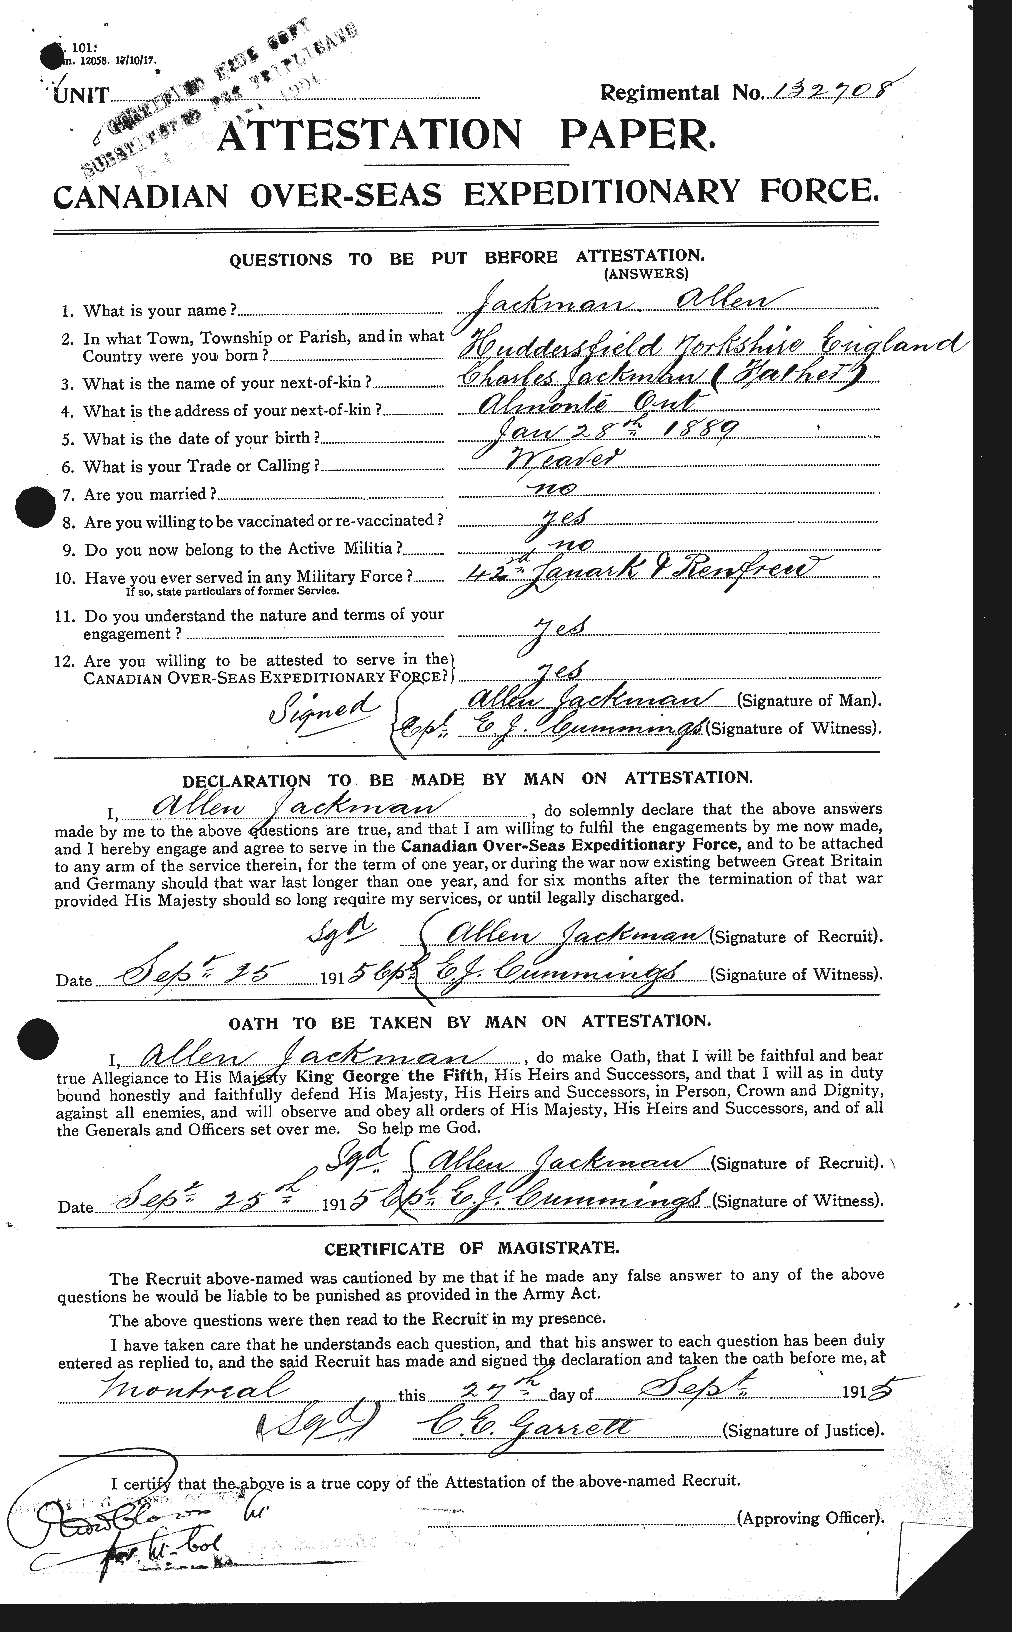 Dossiers du Personnel de la Première Guerre mondiale - CEC 409819a